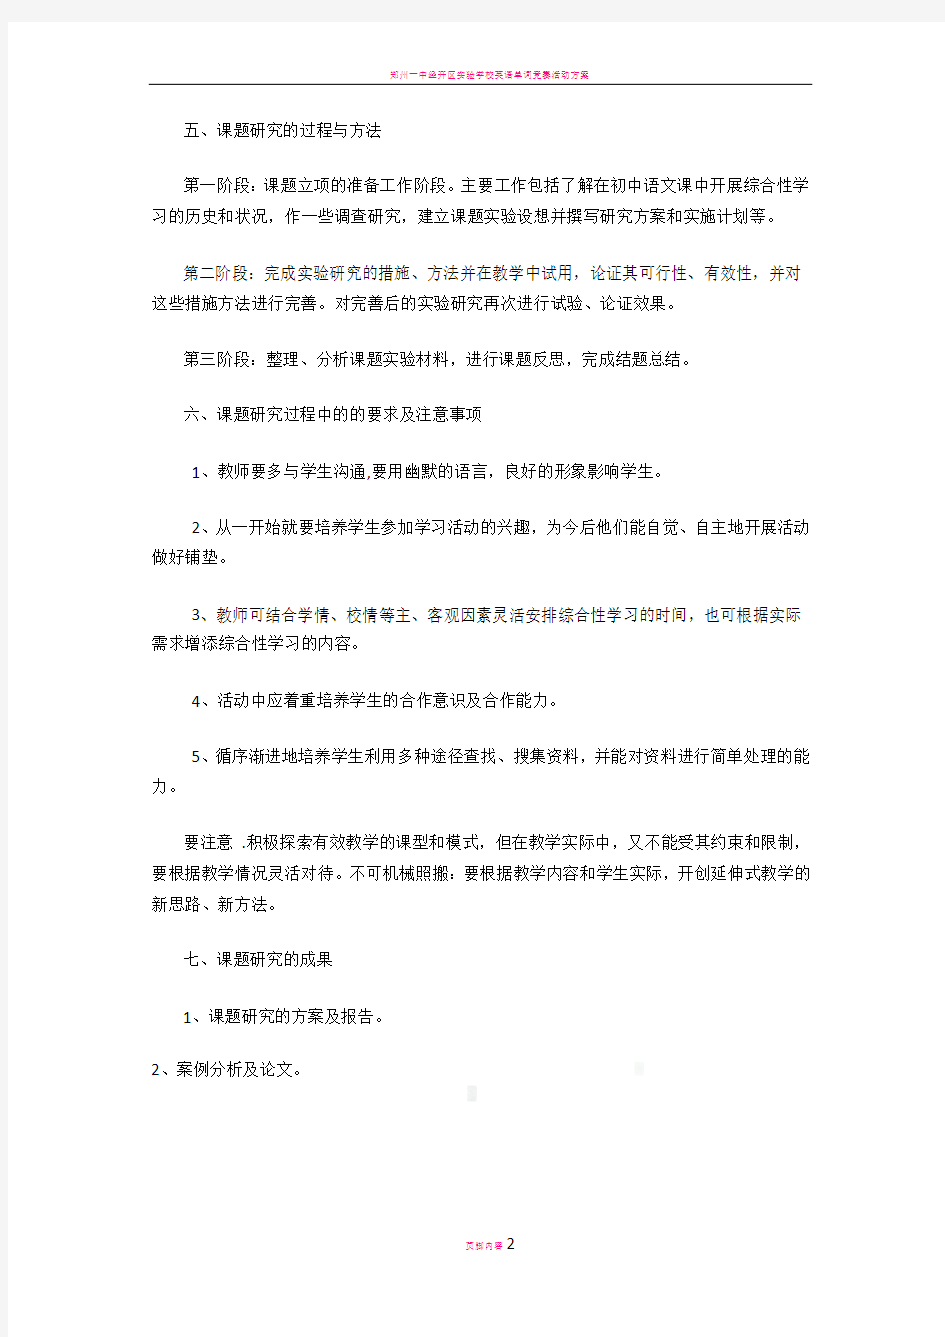 初中语文小课题研究方案